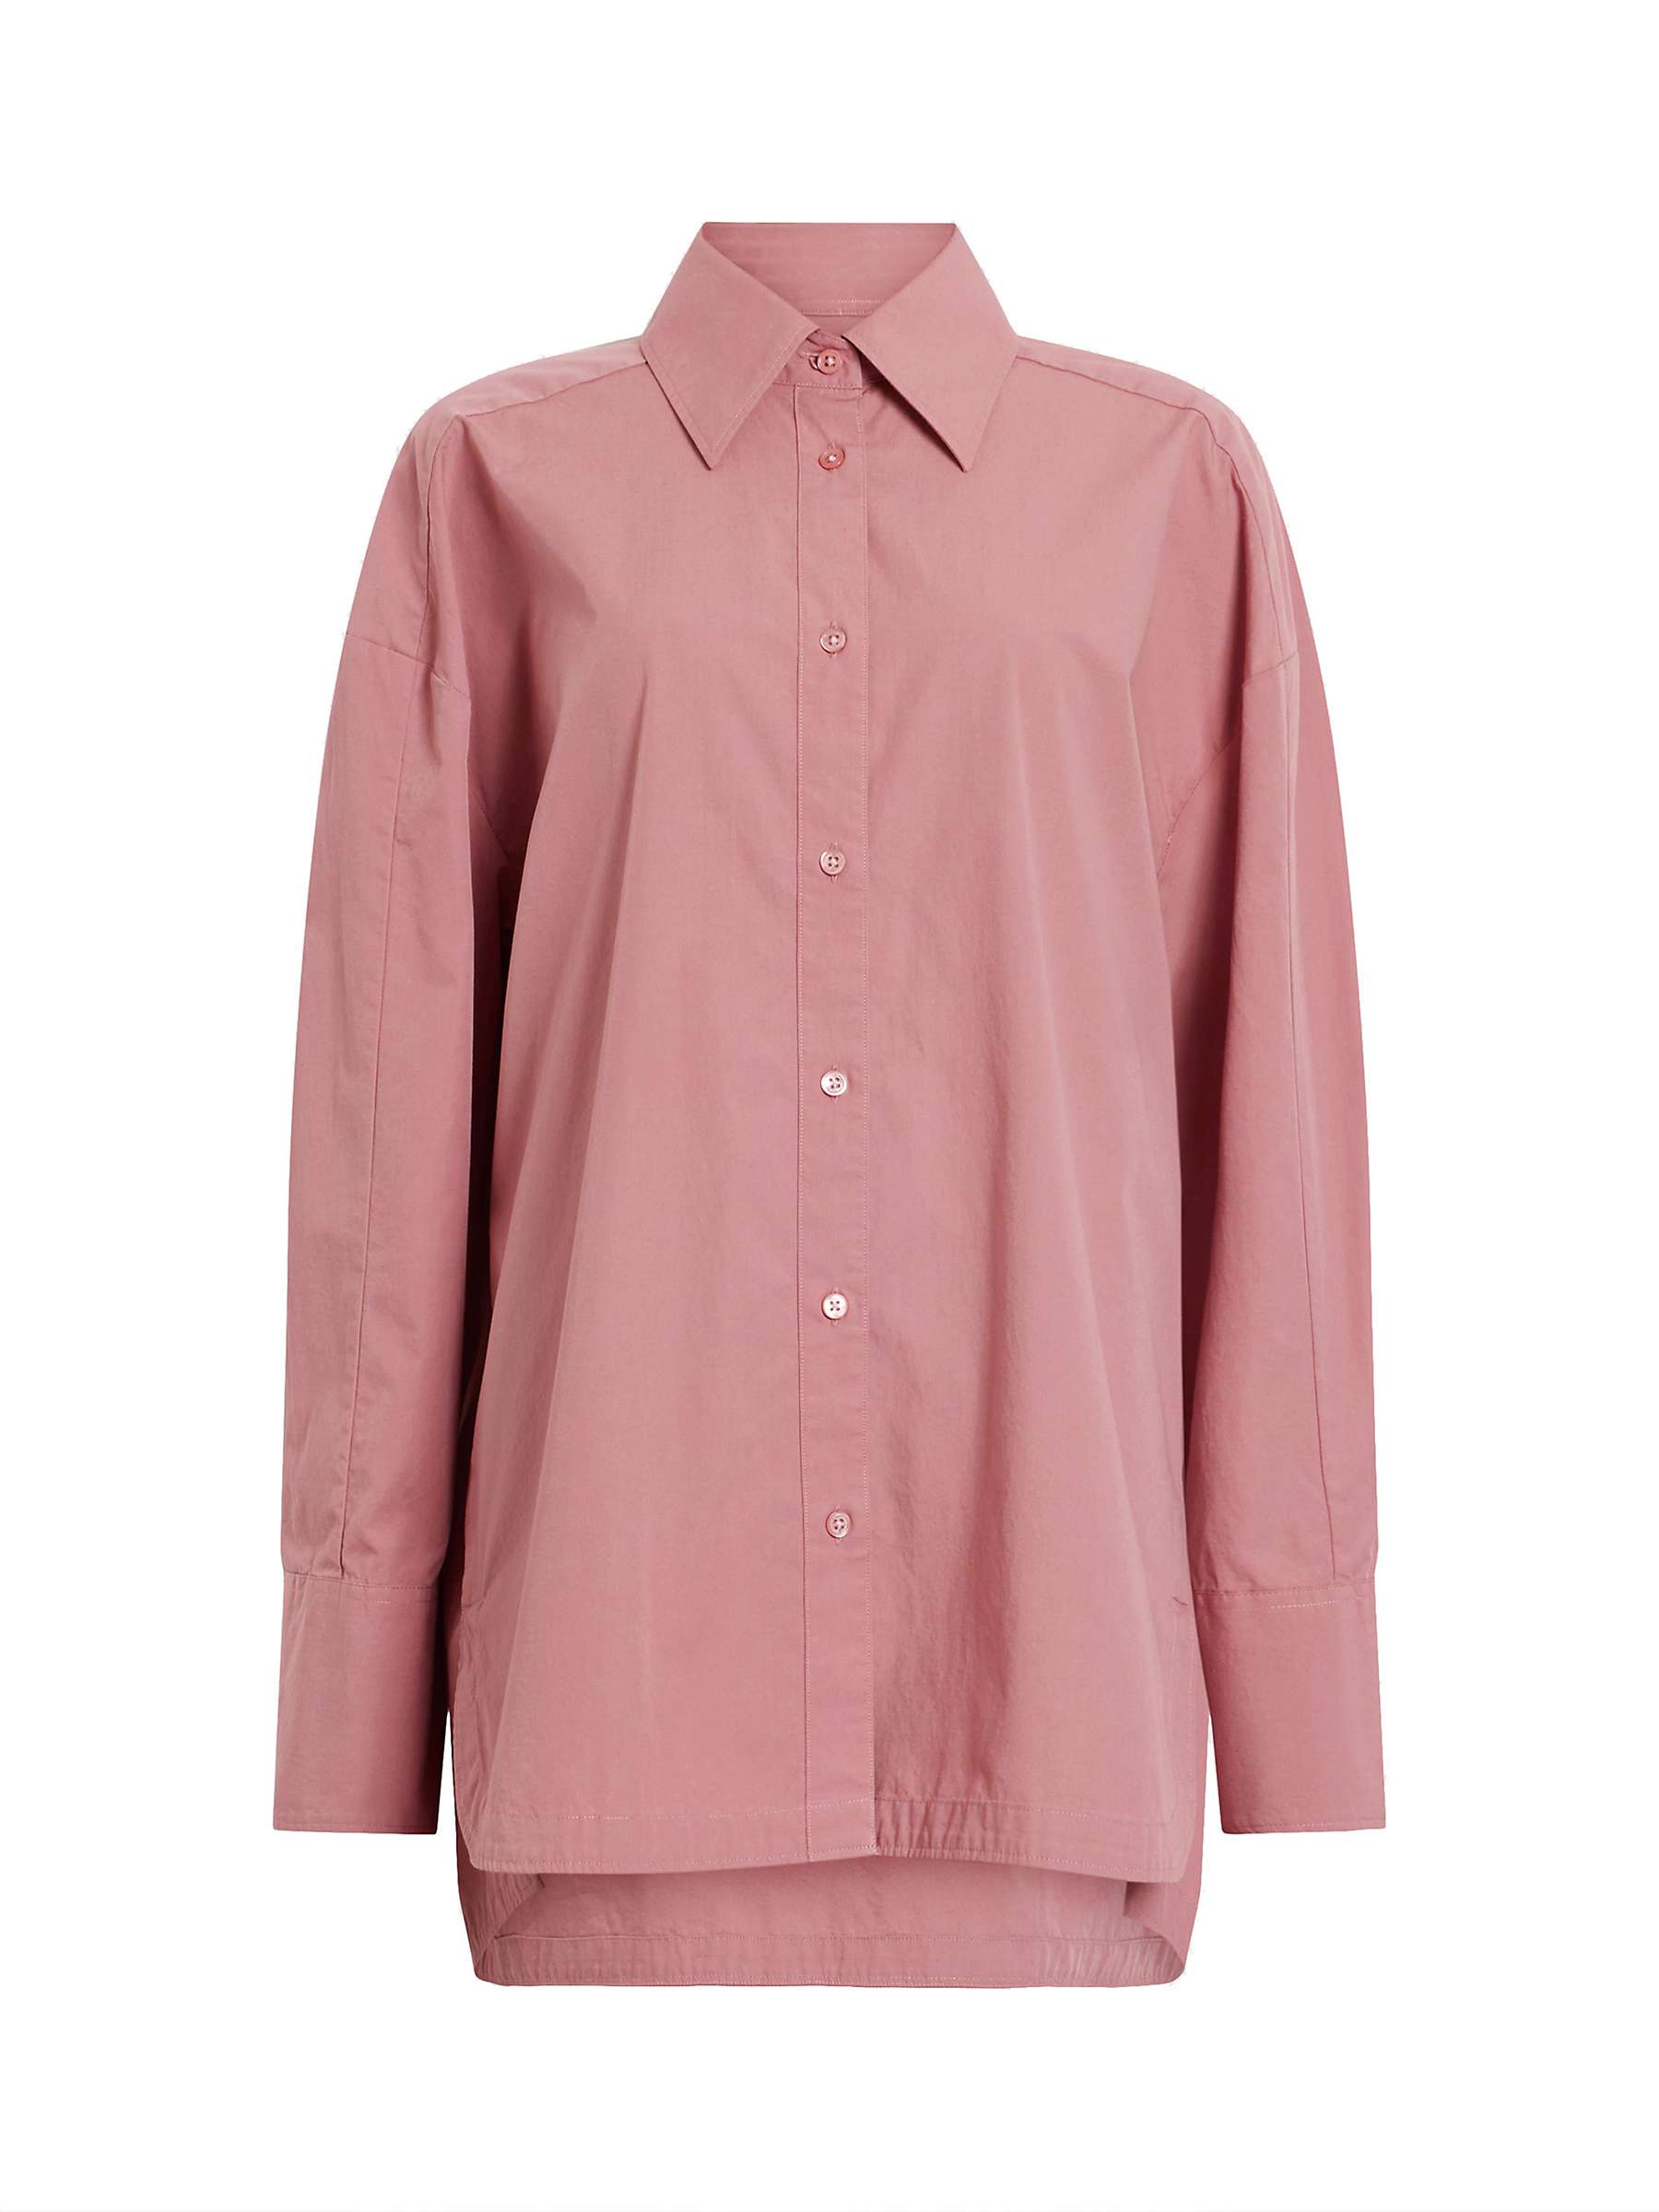 Buy AllSaints Karina Organic Cotton Shirt, Ash Rose Pink Online at johnlewis.com